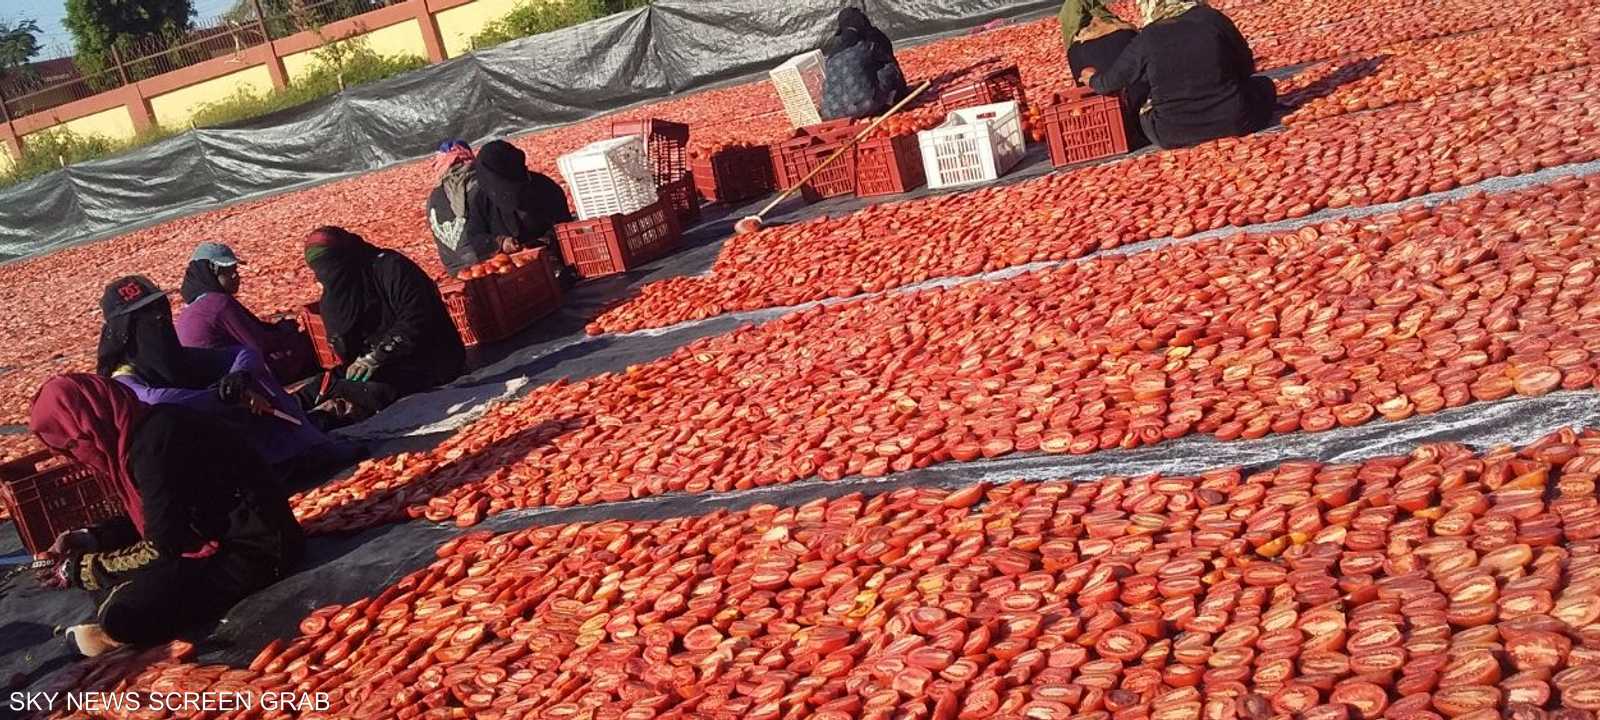 لا يرتبط تجفيف الطماطم بوقت بعينه، ولكن يمتد على مدار العام